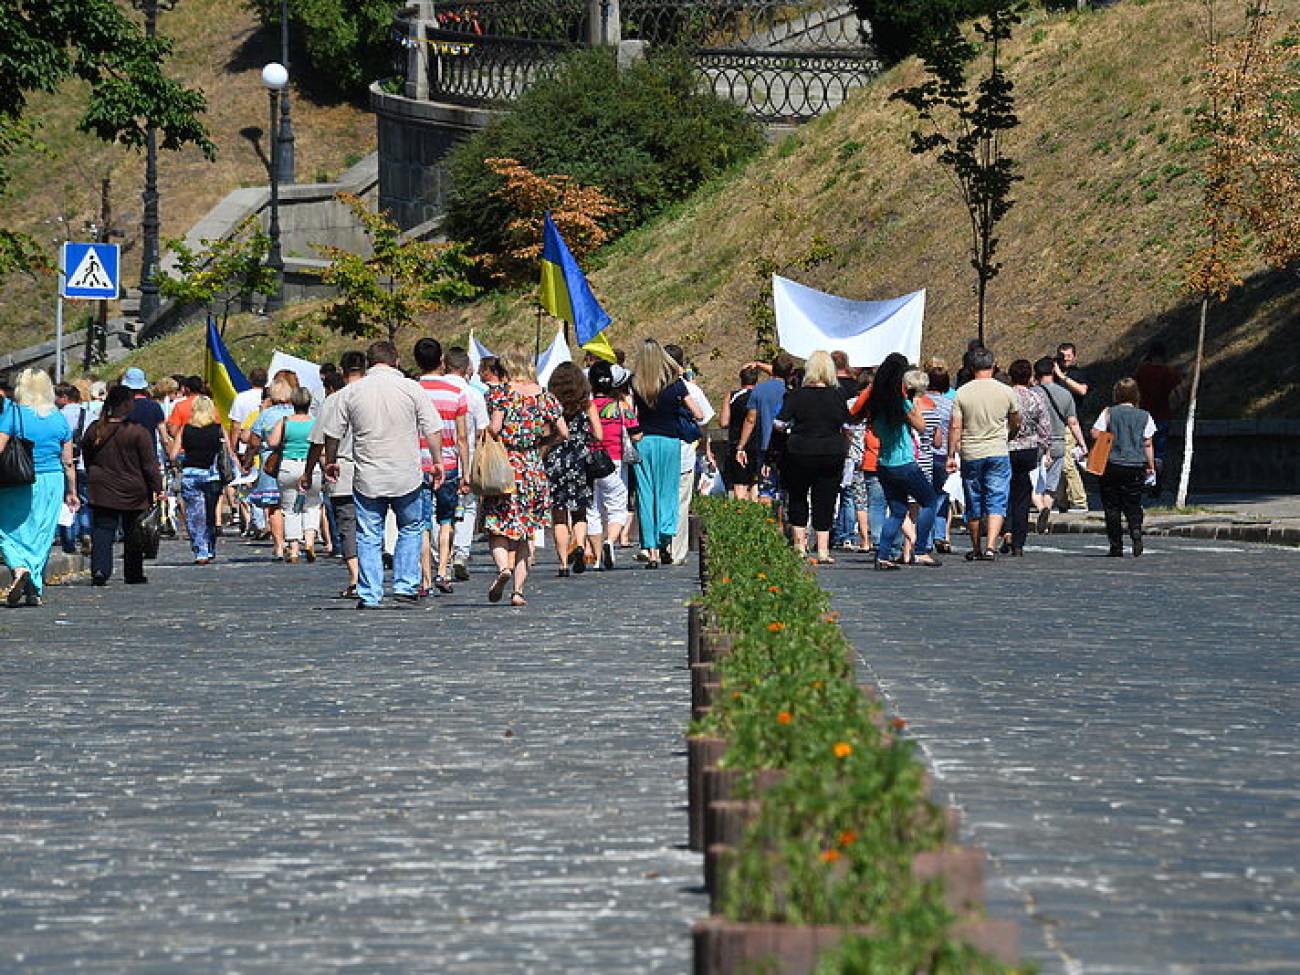 Улица Институтская в Киеве стала частично пешеходной